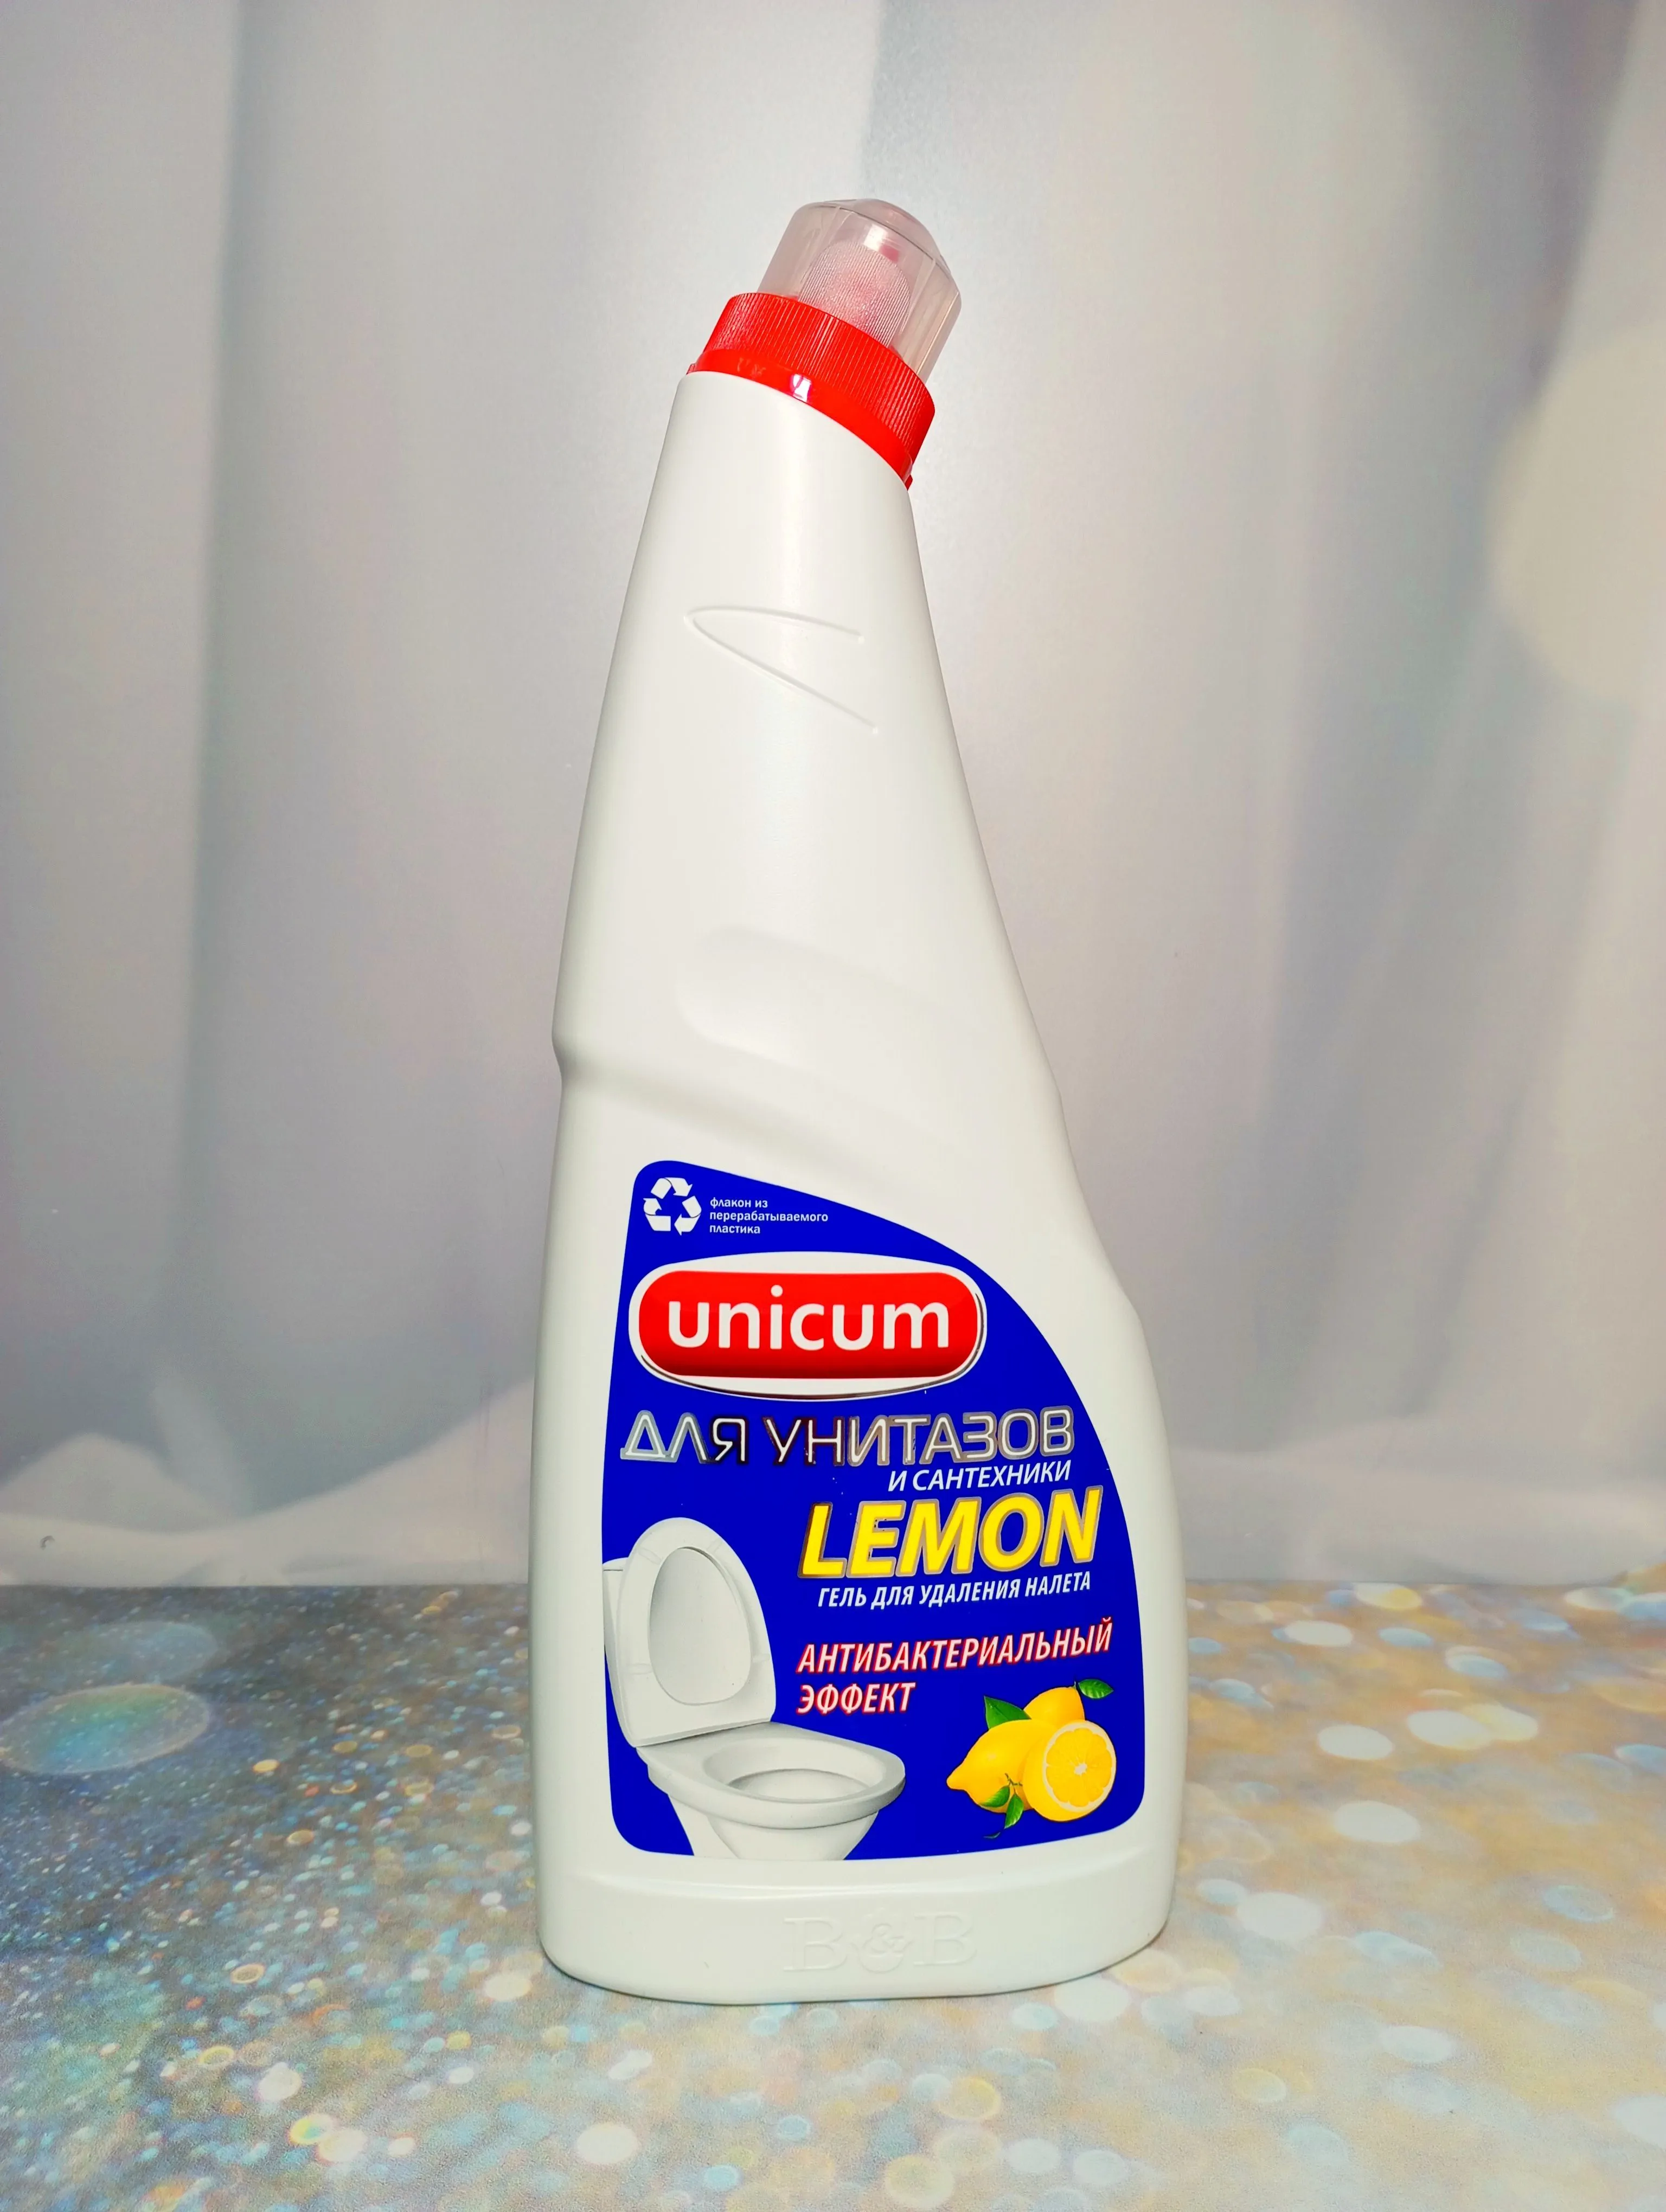 UNiCUM Гель для чистки и унитазов Лимон 750 мл